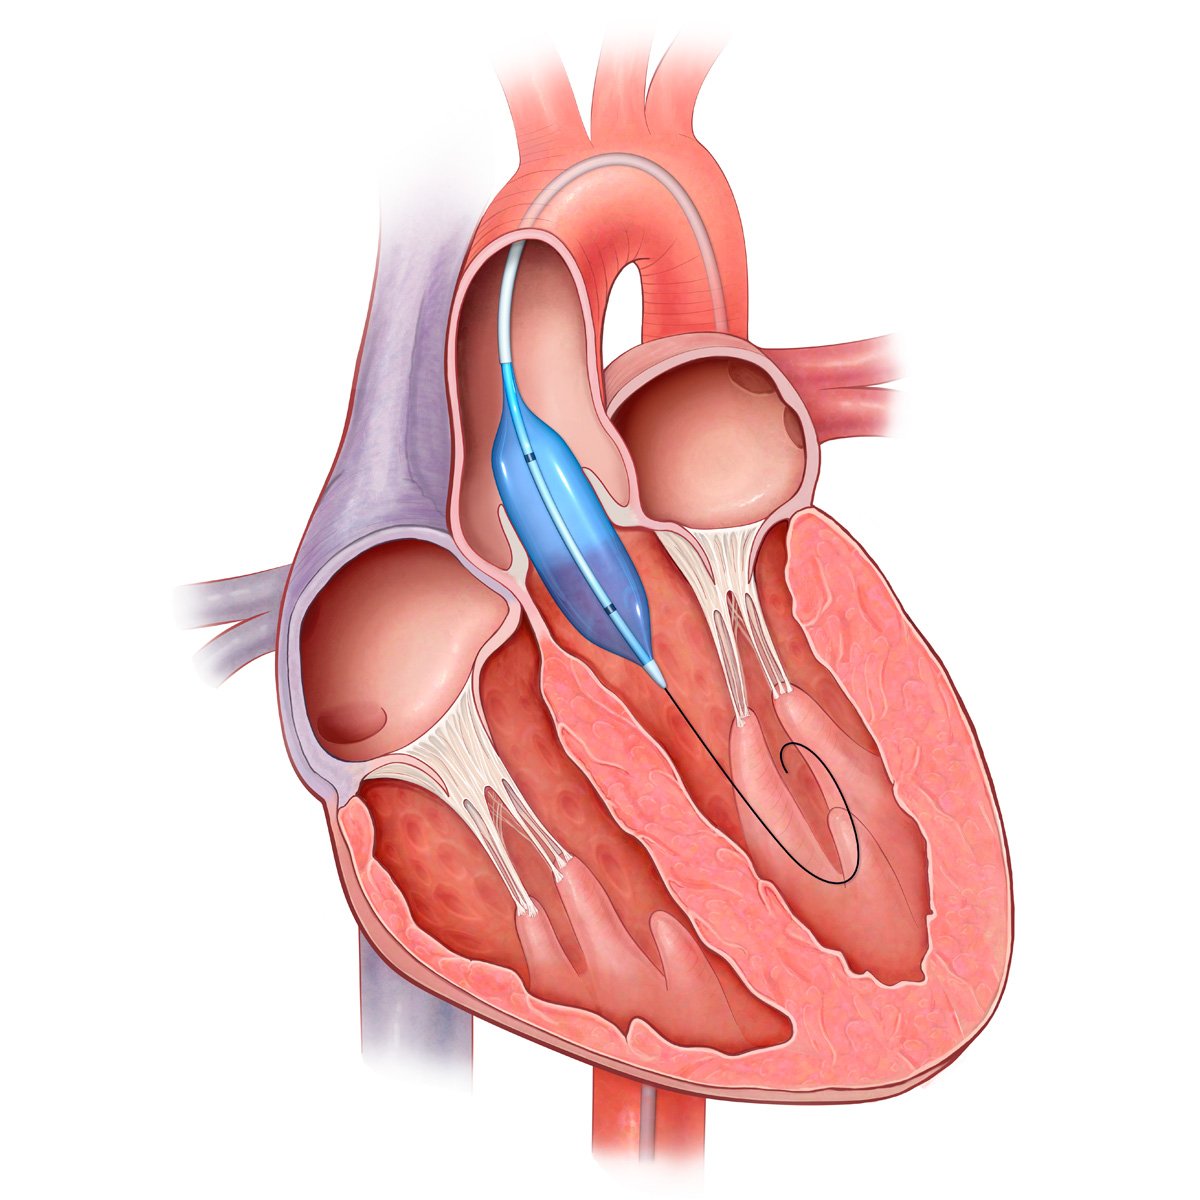 Митральный аортальный стеноз. Аортальный клапан сердца. Митральный и аортальный клапан сердца. Митральный клапан и аортальный клапан.